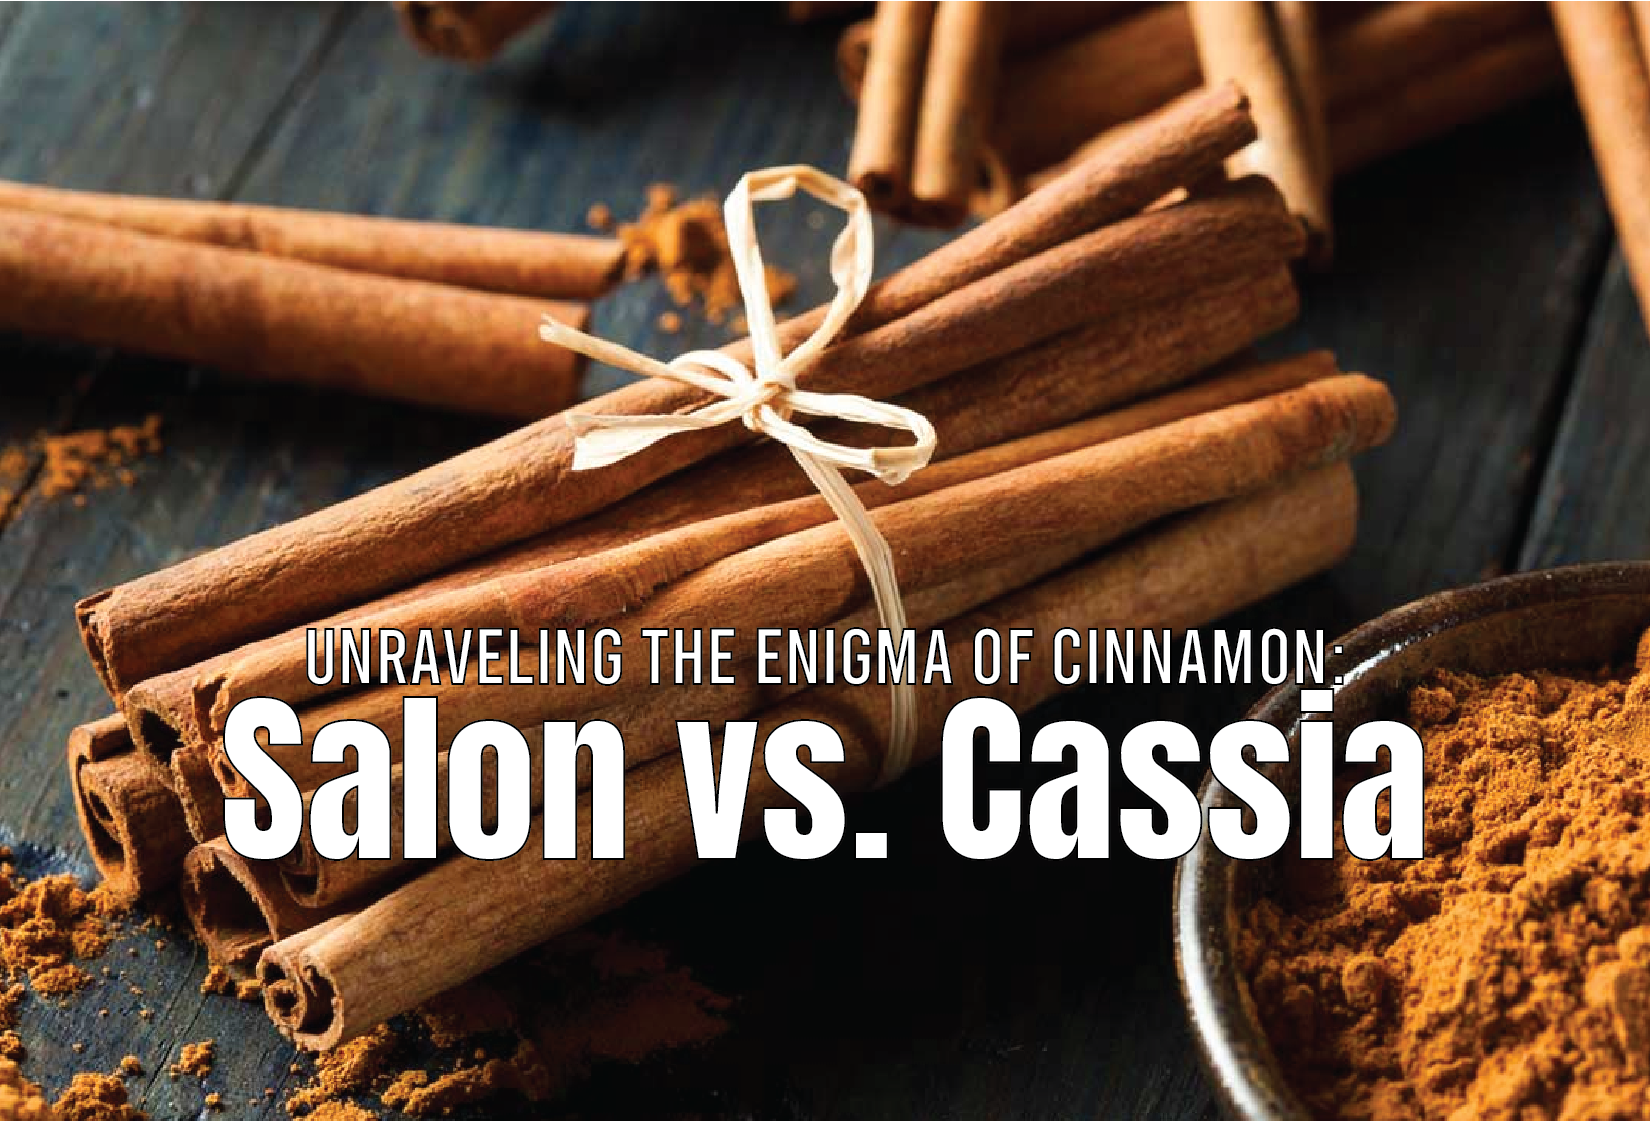 Unraveling the Enigma of Cinnamon: Salon vs. Cassia